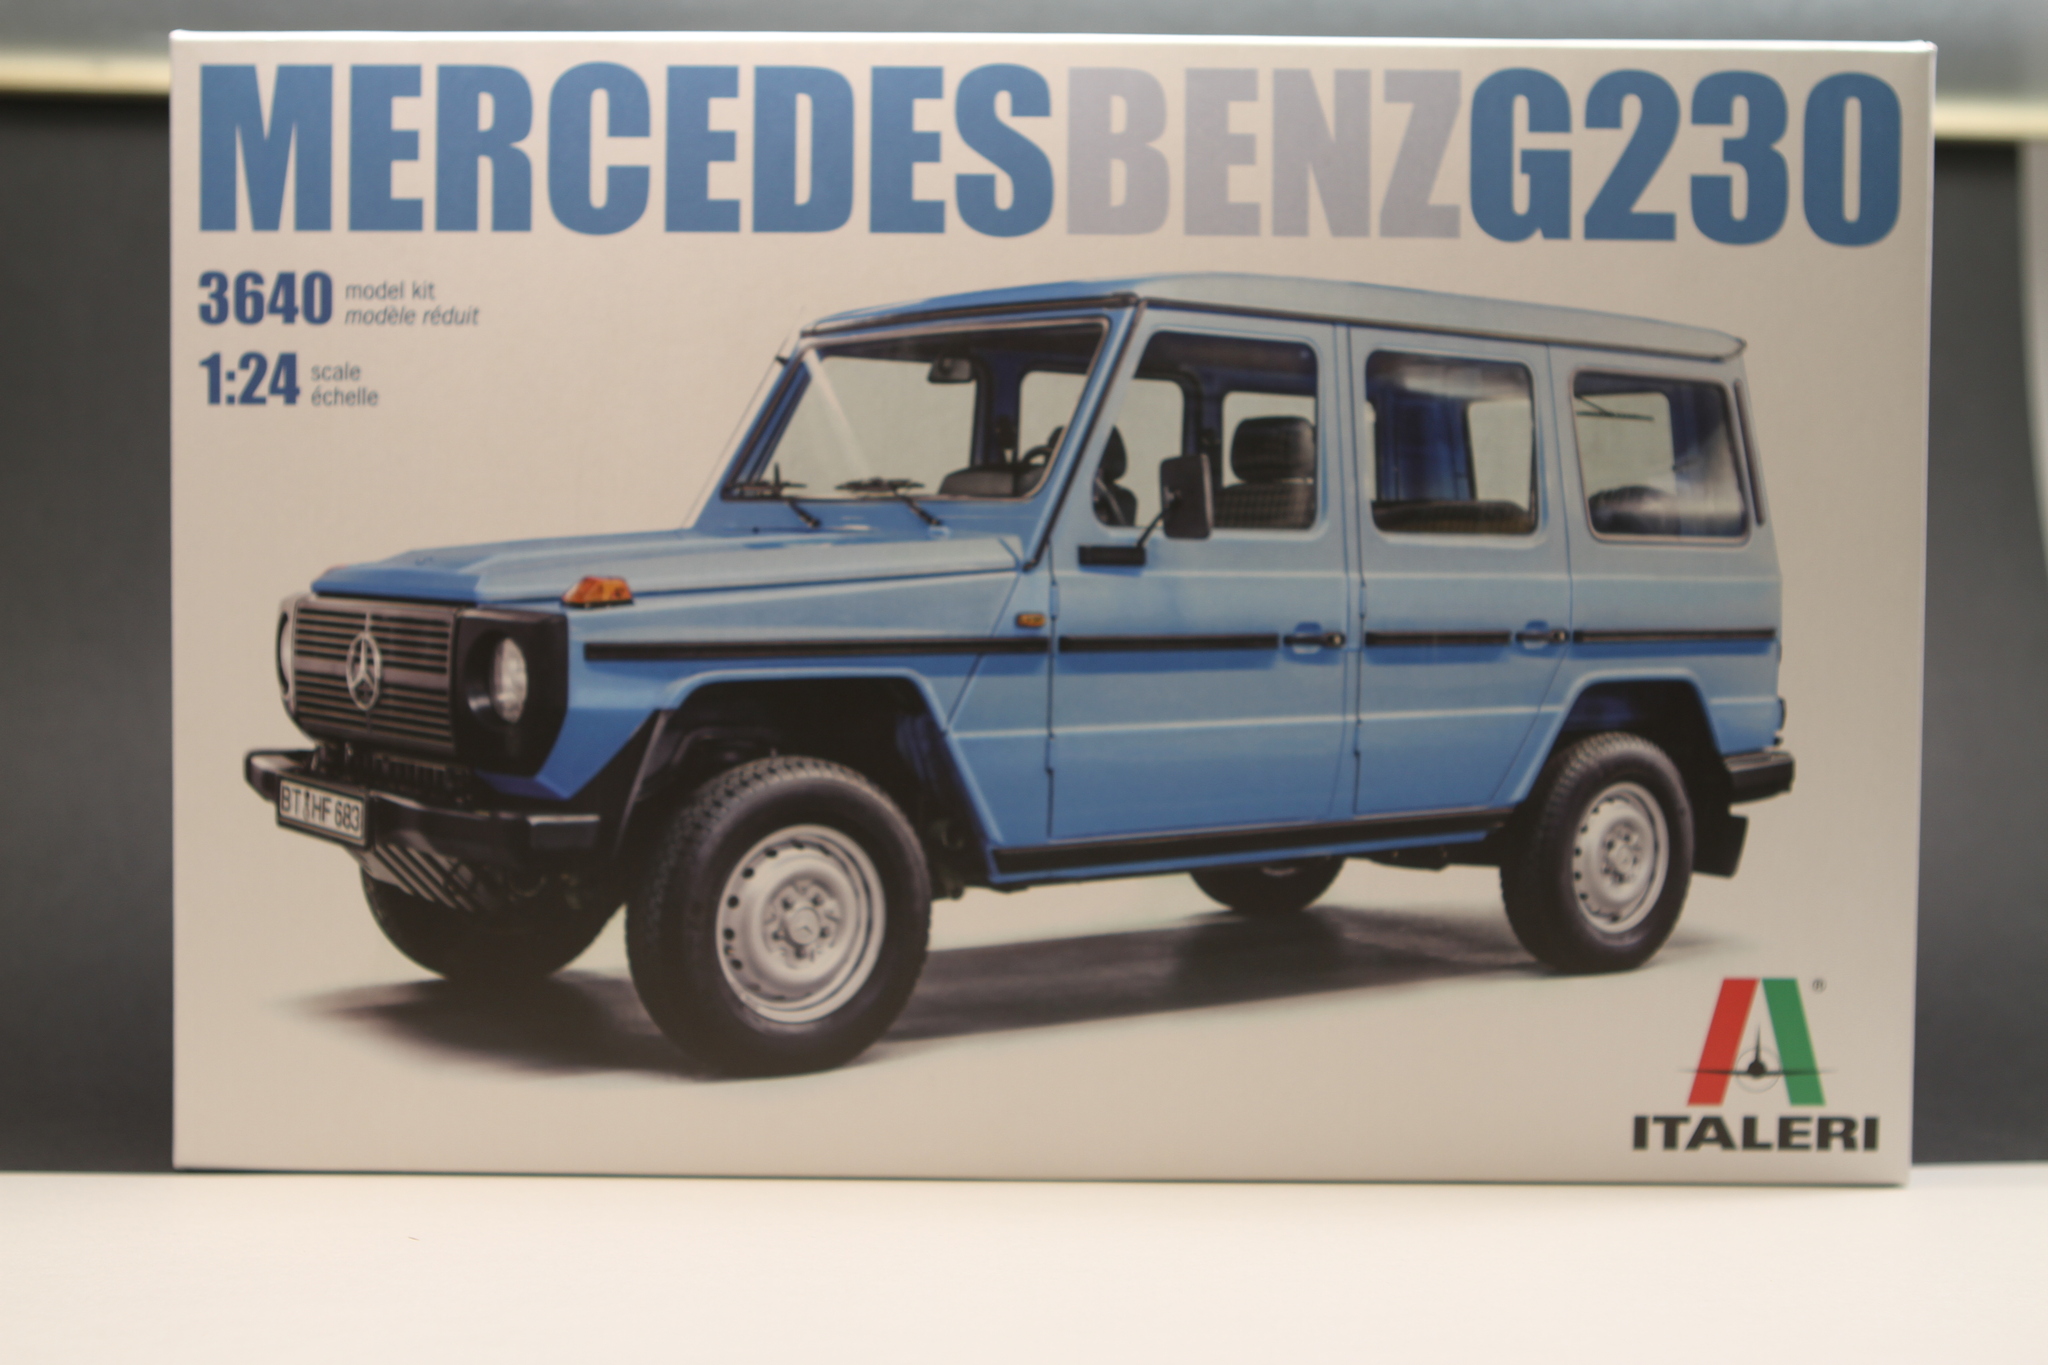 Mercedes-Benz G230